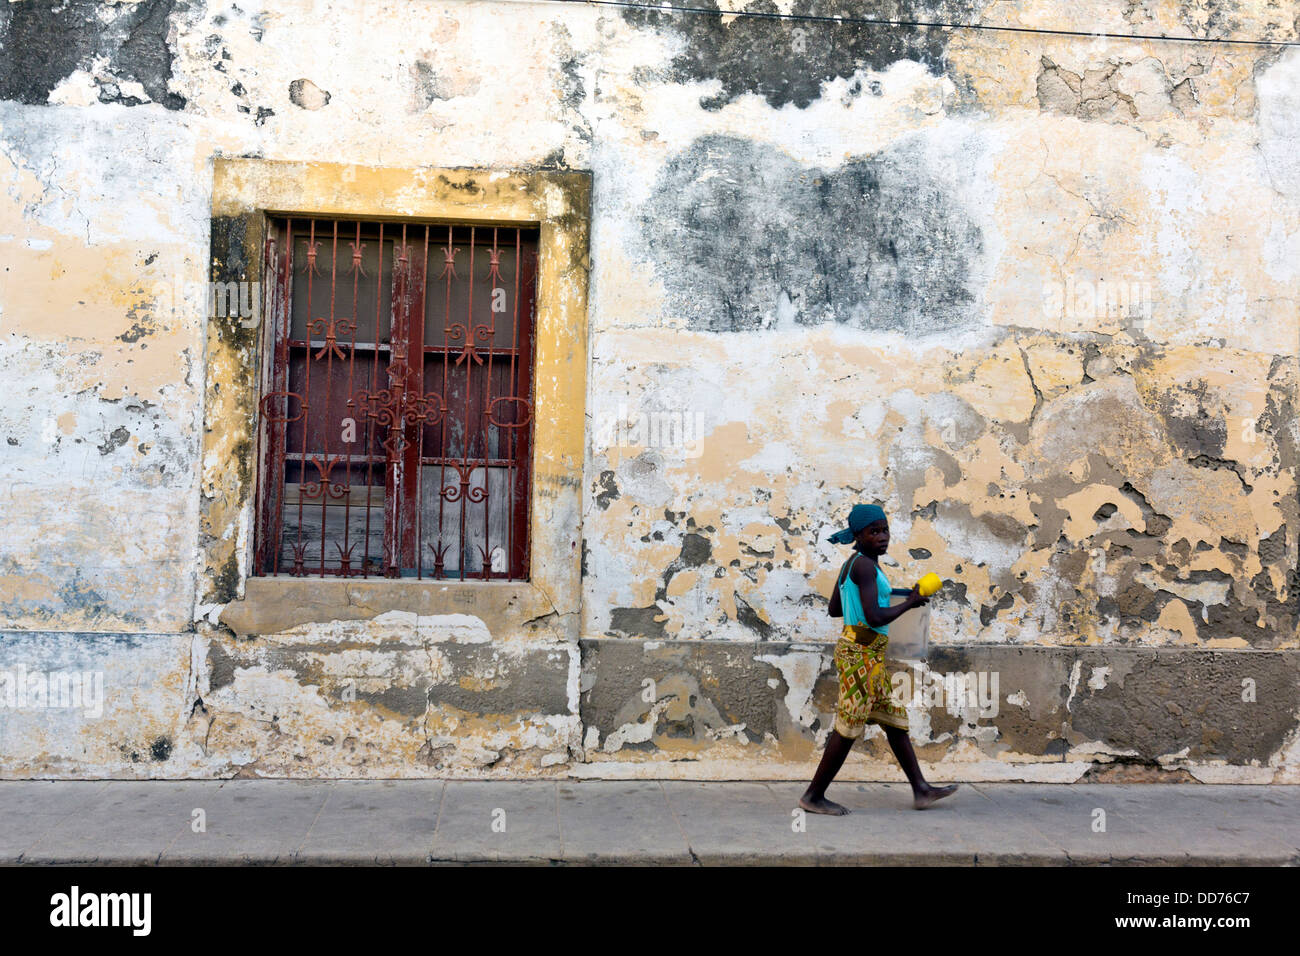 Mozambico, Nampula Provincia, la Ilha de Moçambique, donna a piedi nella città di pietra. Foto Stock